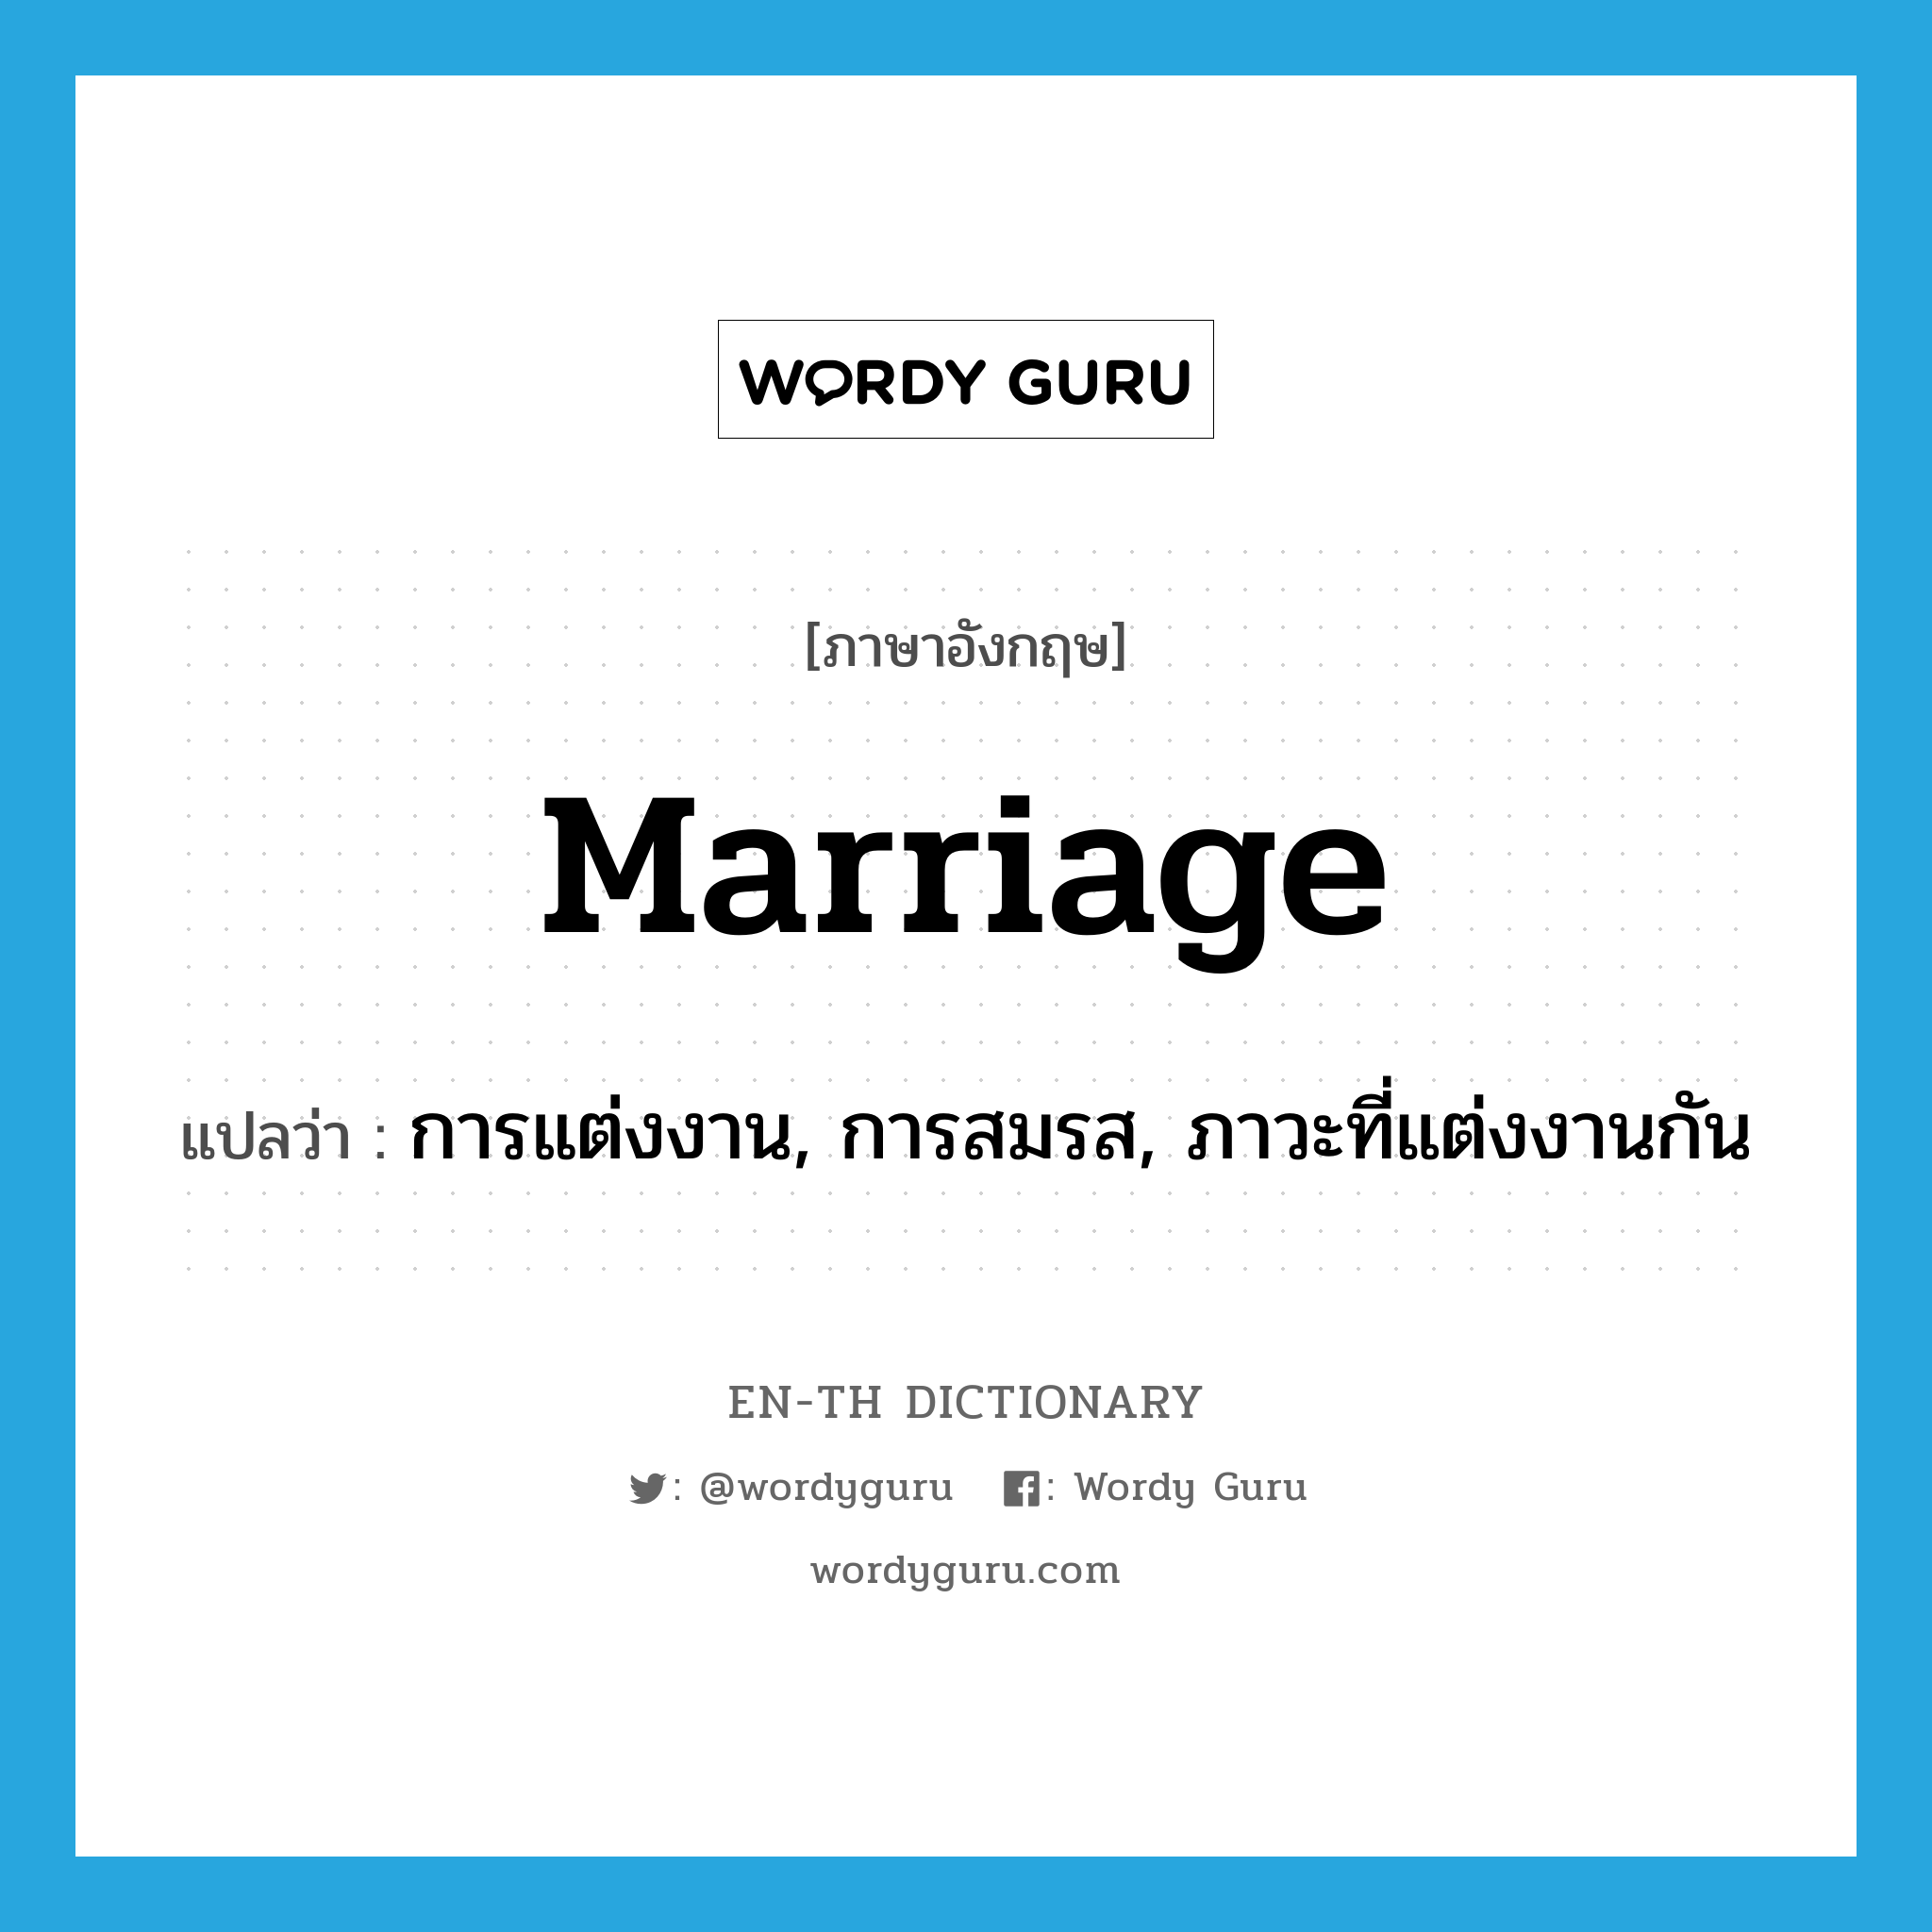 การแต่งงาน, การสมรส, ภาวะที่แต่งงานกัน ภาษาอังกฤษ?, คำศัพท์ภาษาอังกฤษ การแต่งงาน, การสมรส, ภาวะที่แต่งงานกัน แปลว่า marriage ประเภท N หมวด N